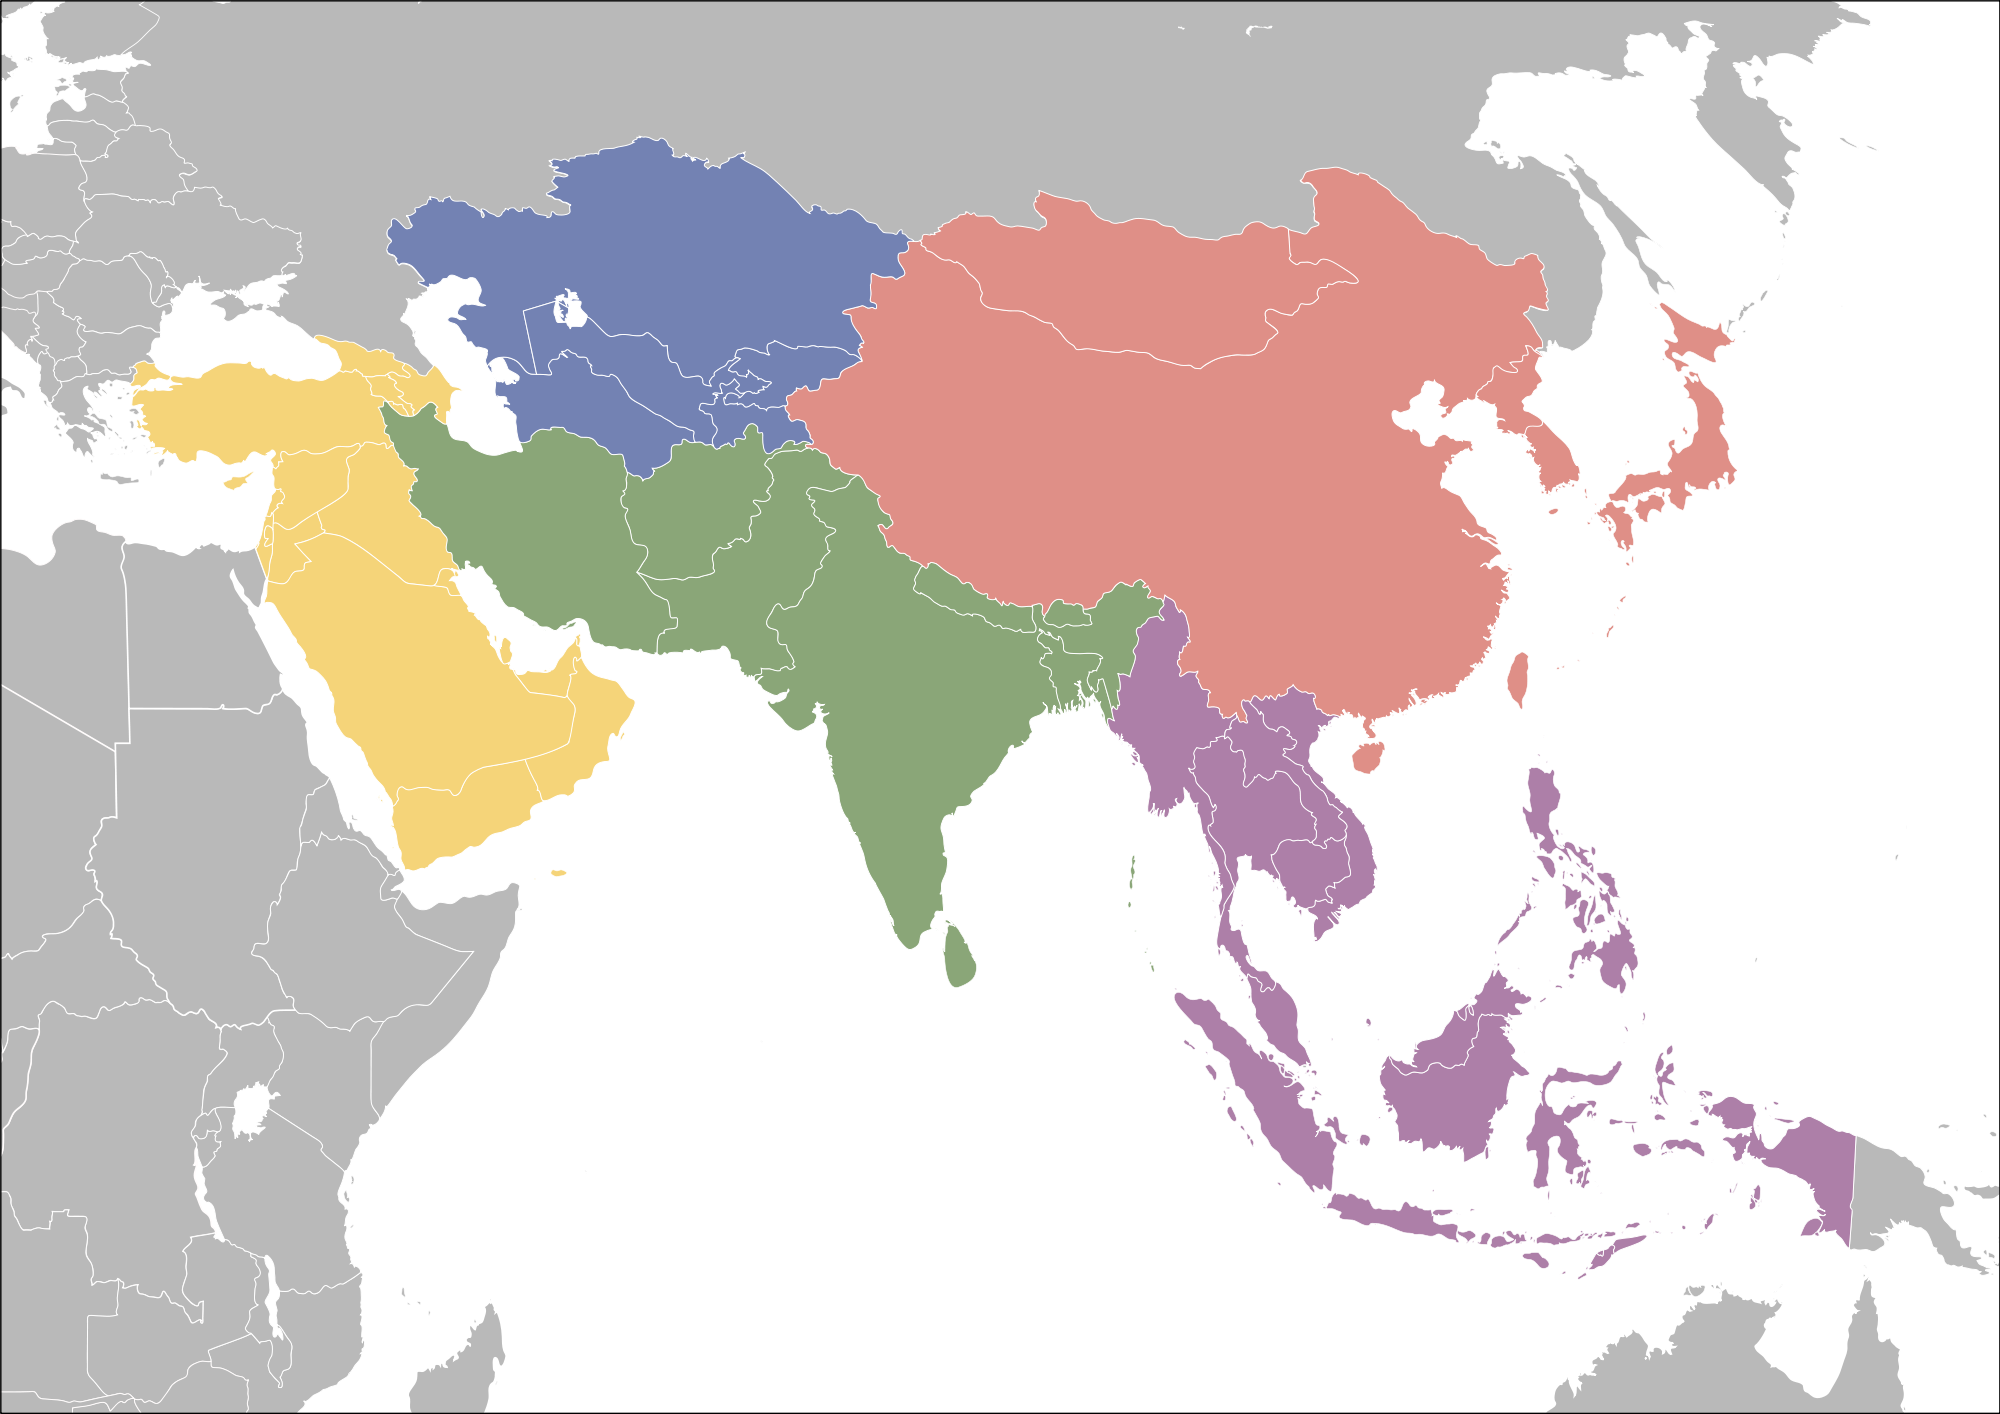 Asia region. Субрегионы зарубежной Азии Южная Азия. Субрегионы зарубежной Азии на карте. Субрегионы зарубежной Азии Восточной Южной Юго Восточной Азии. Регионы Южная Азия Юго-Западная Азия.